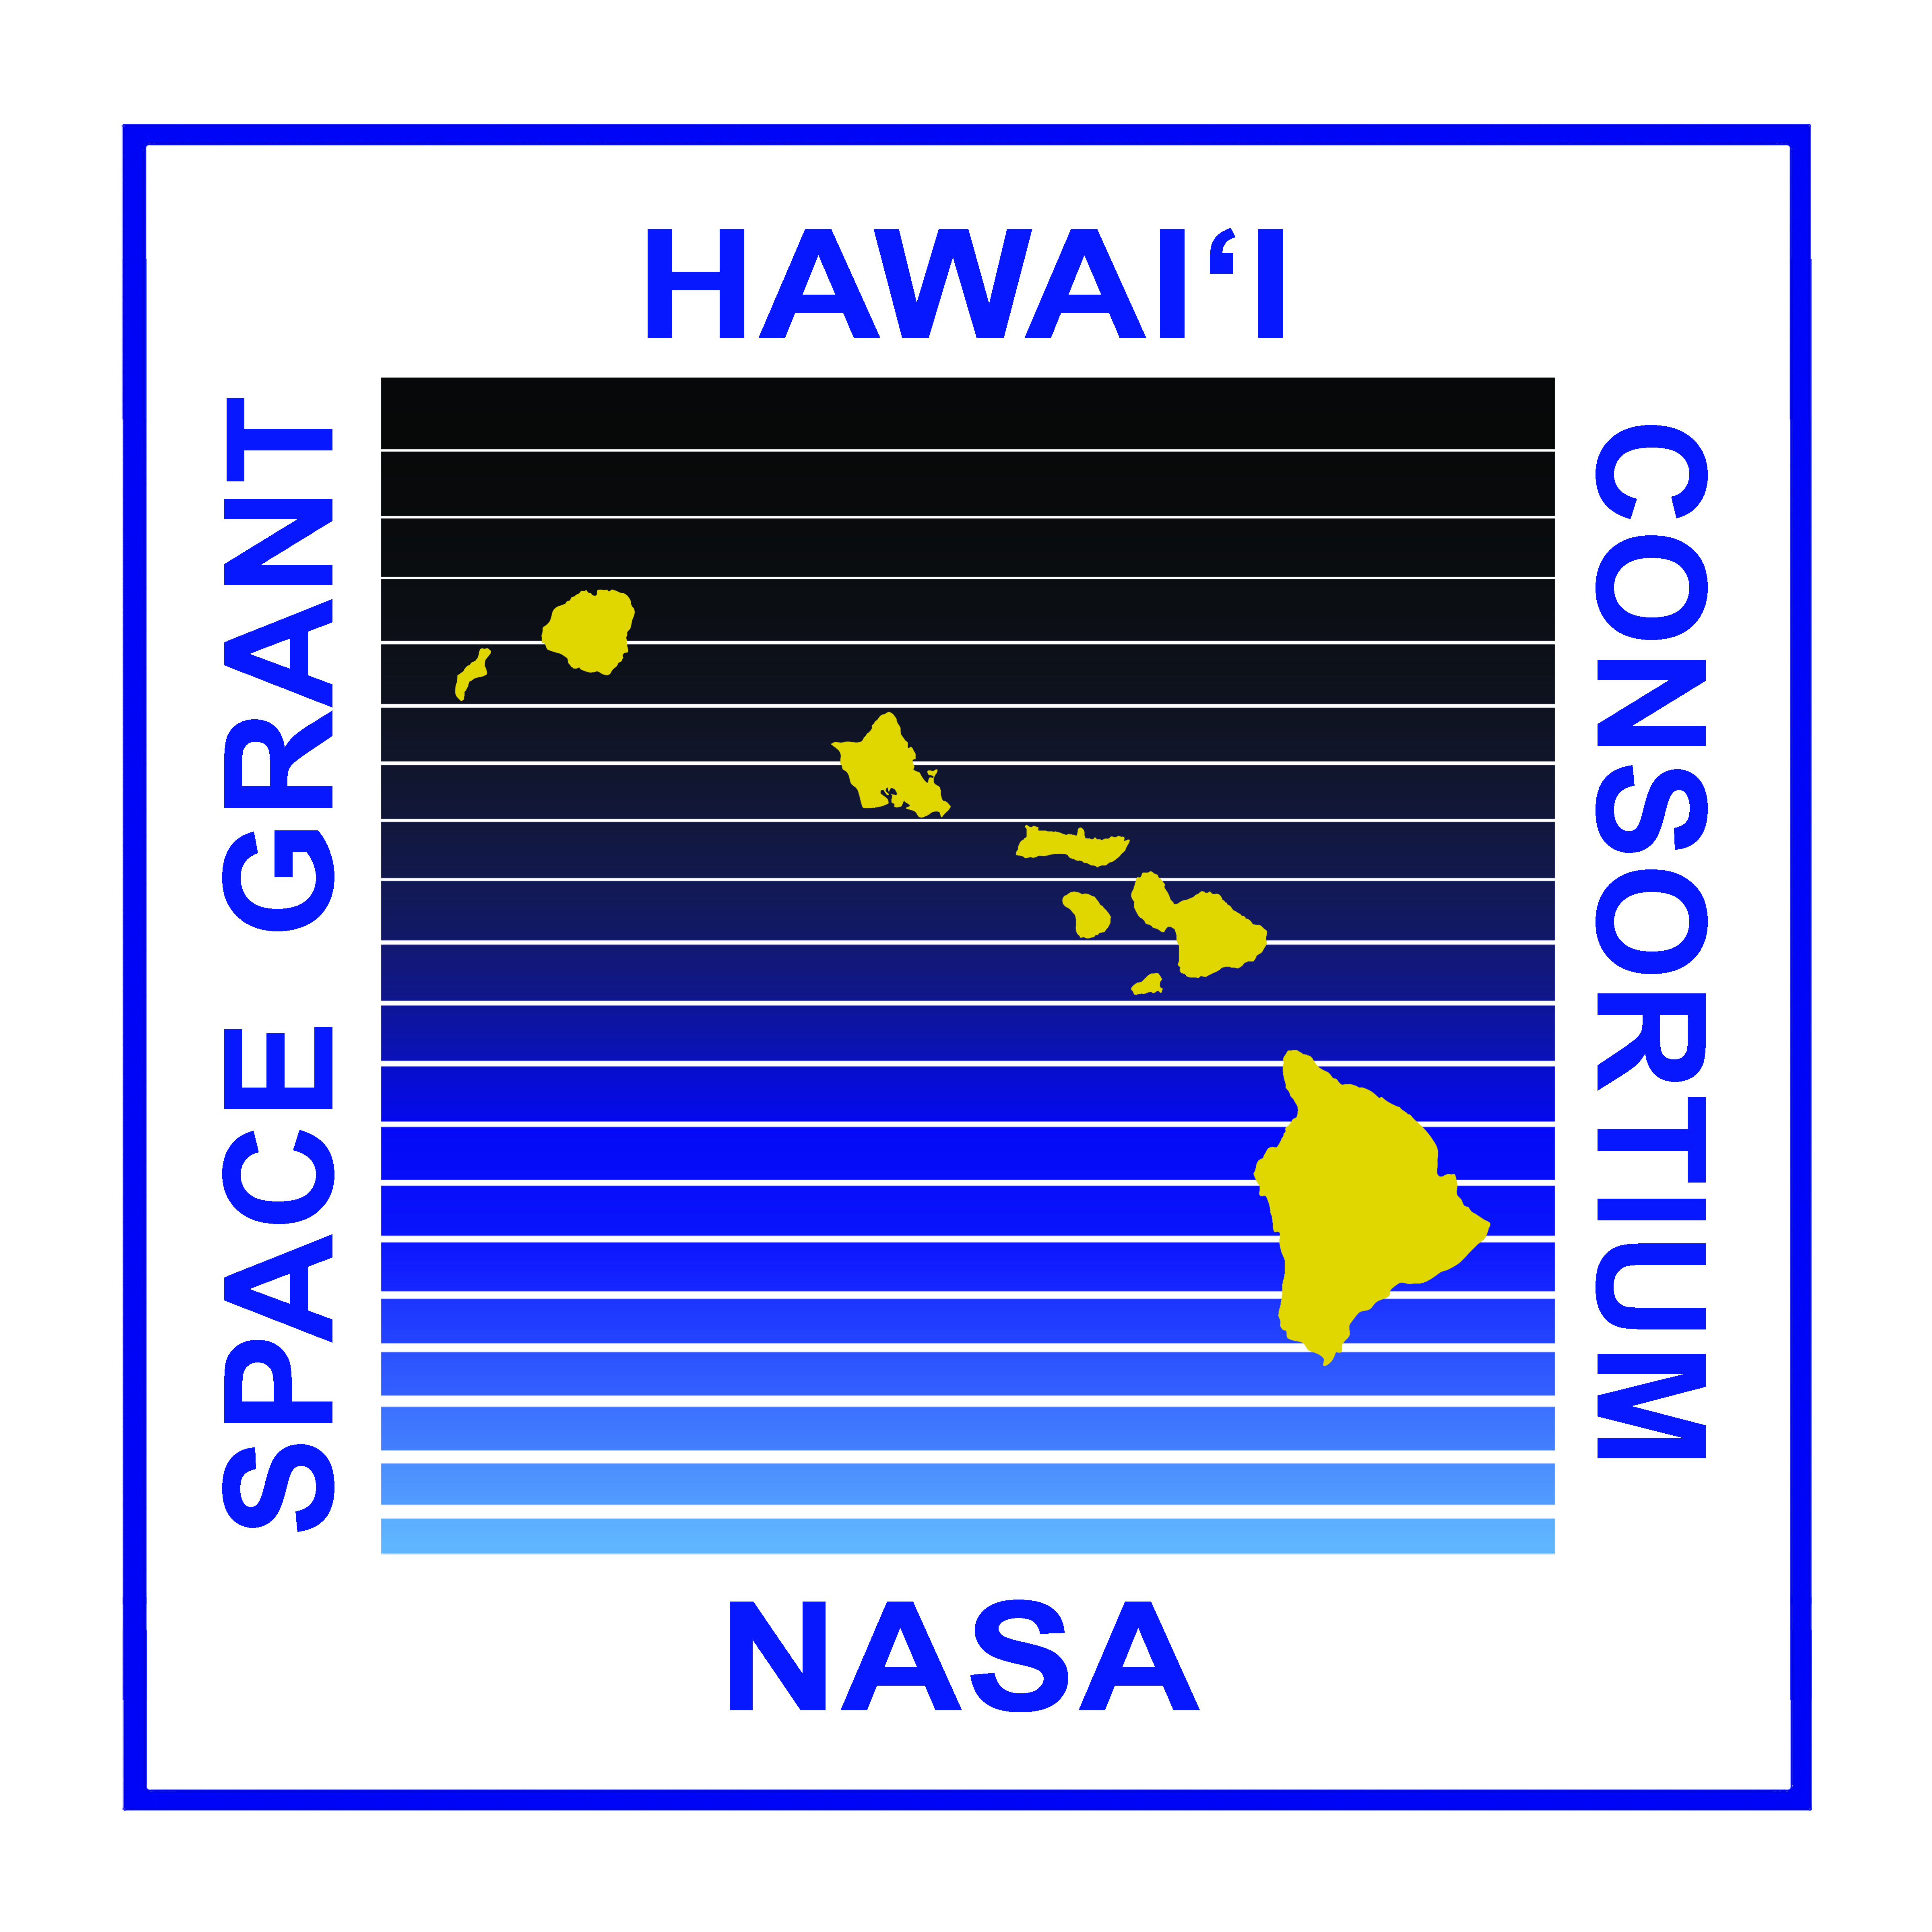 VIQC, Hawaii Space Grant Consortium Live Remote Tournament, ES&MS, Remote, No Judging